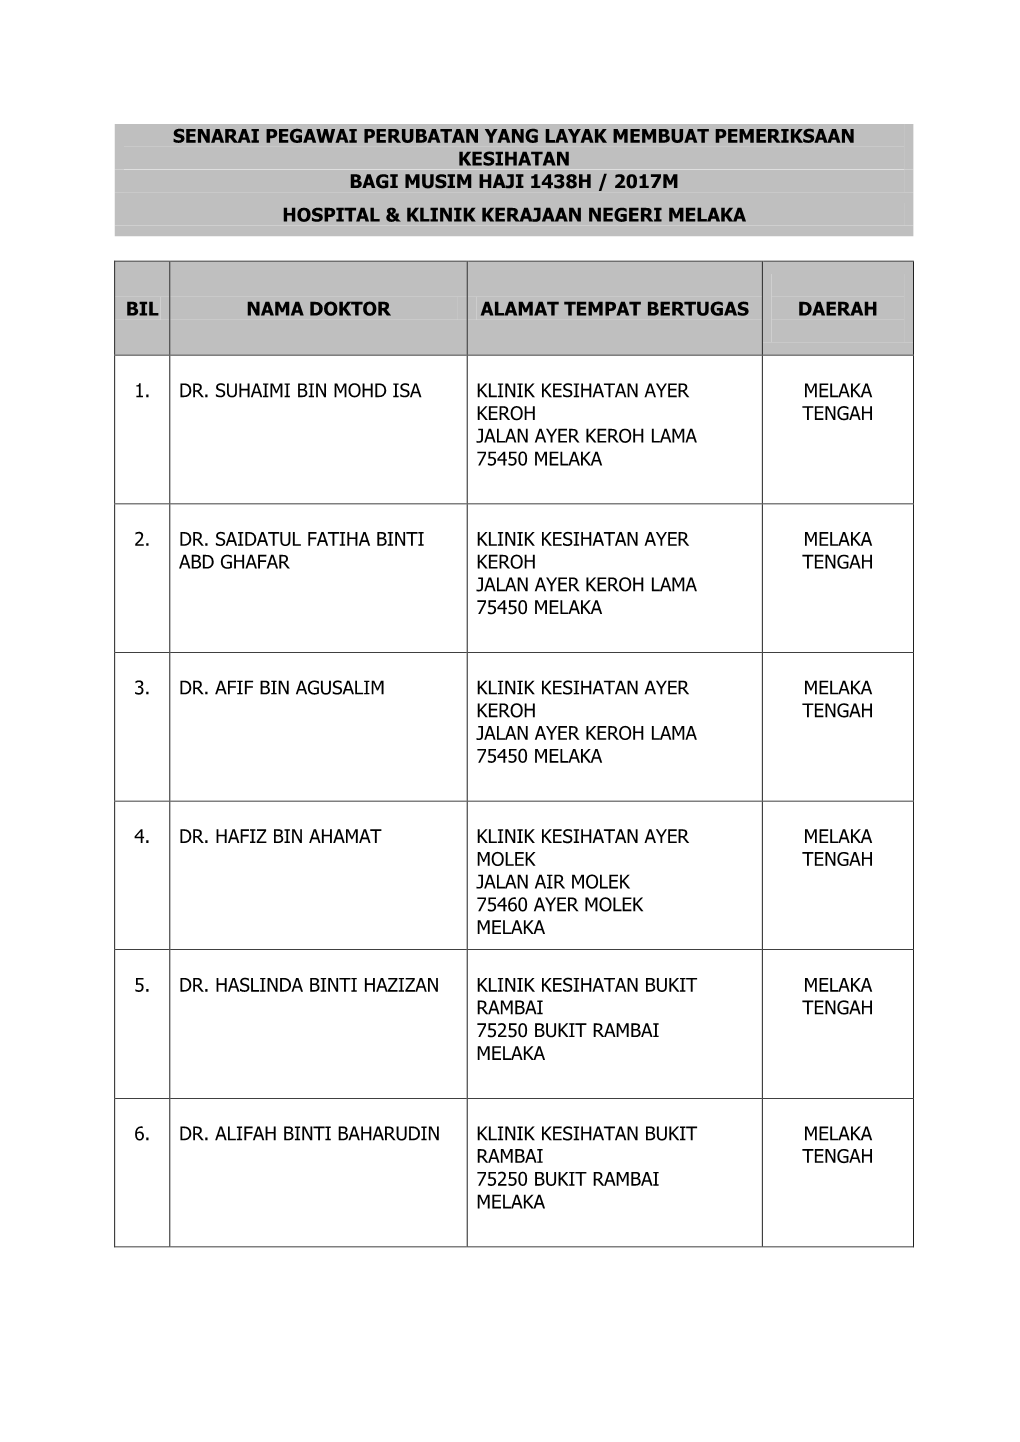 Senarai Pegawai Perubatan Yang Layak Membuat Pemeriksaan Kesihatan Bagi Musim Haji 1438H / 2017M Hospital & Klinik Kerajaan Negeri Melaka